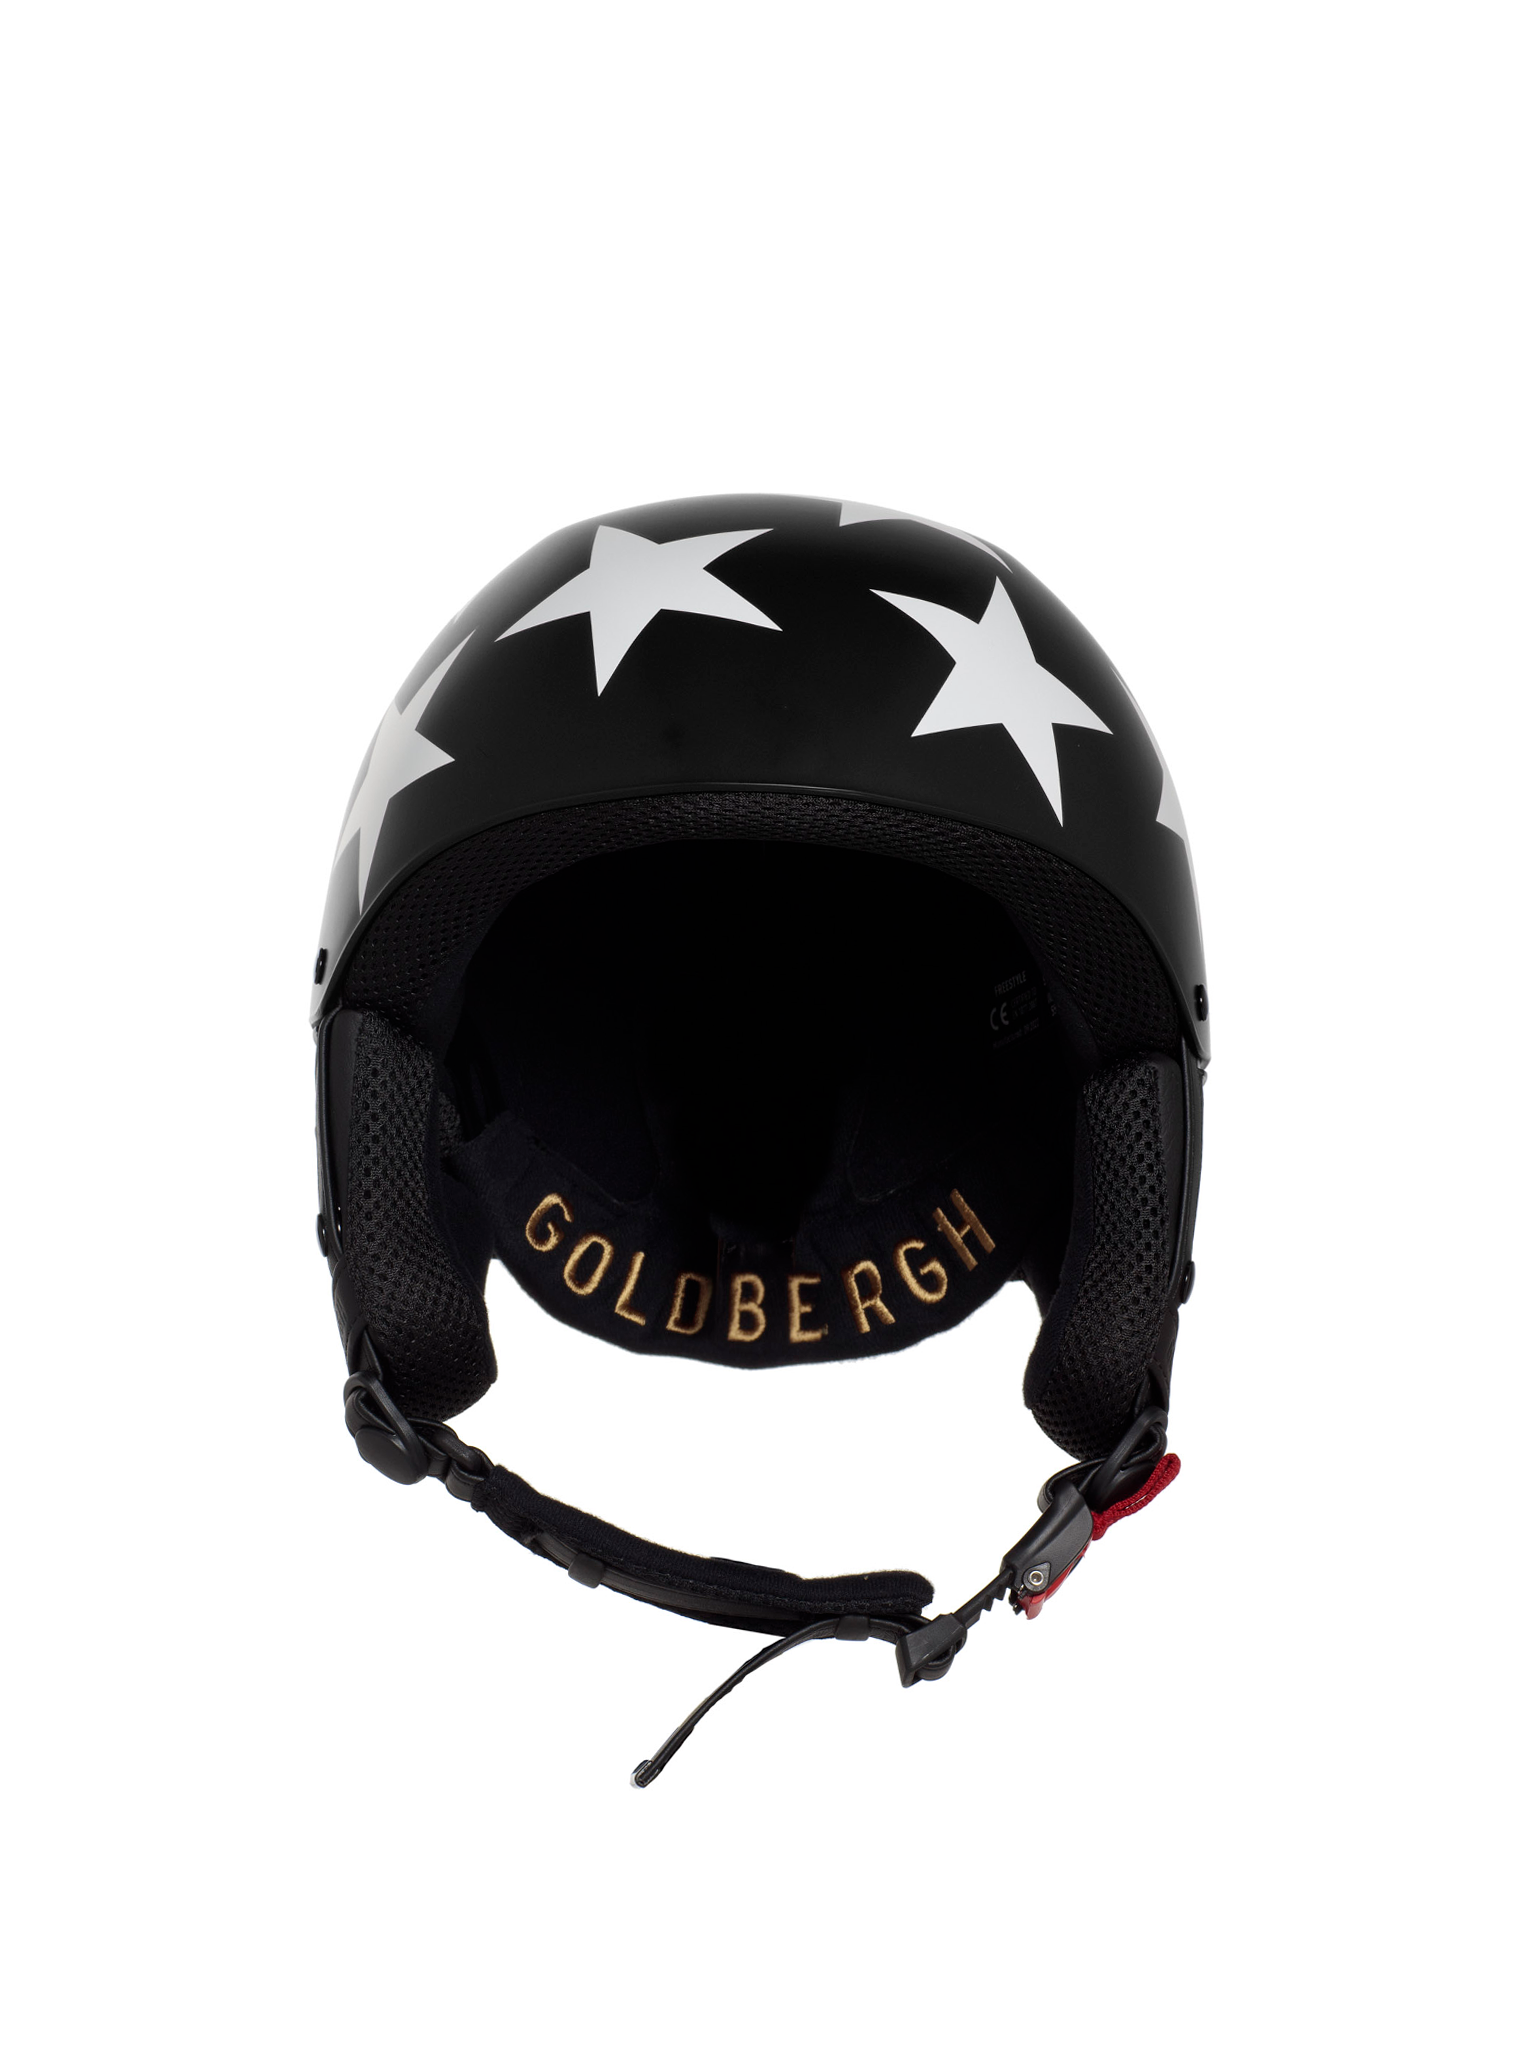 Goldbergh star helmet slopes